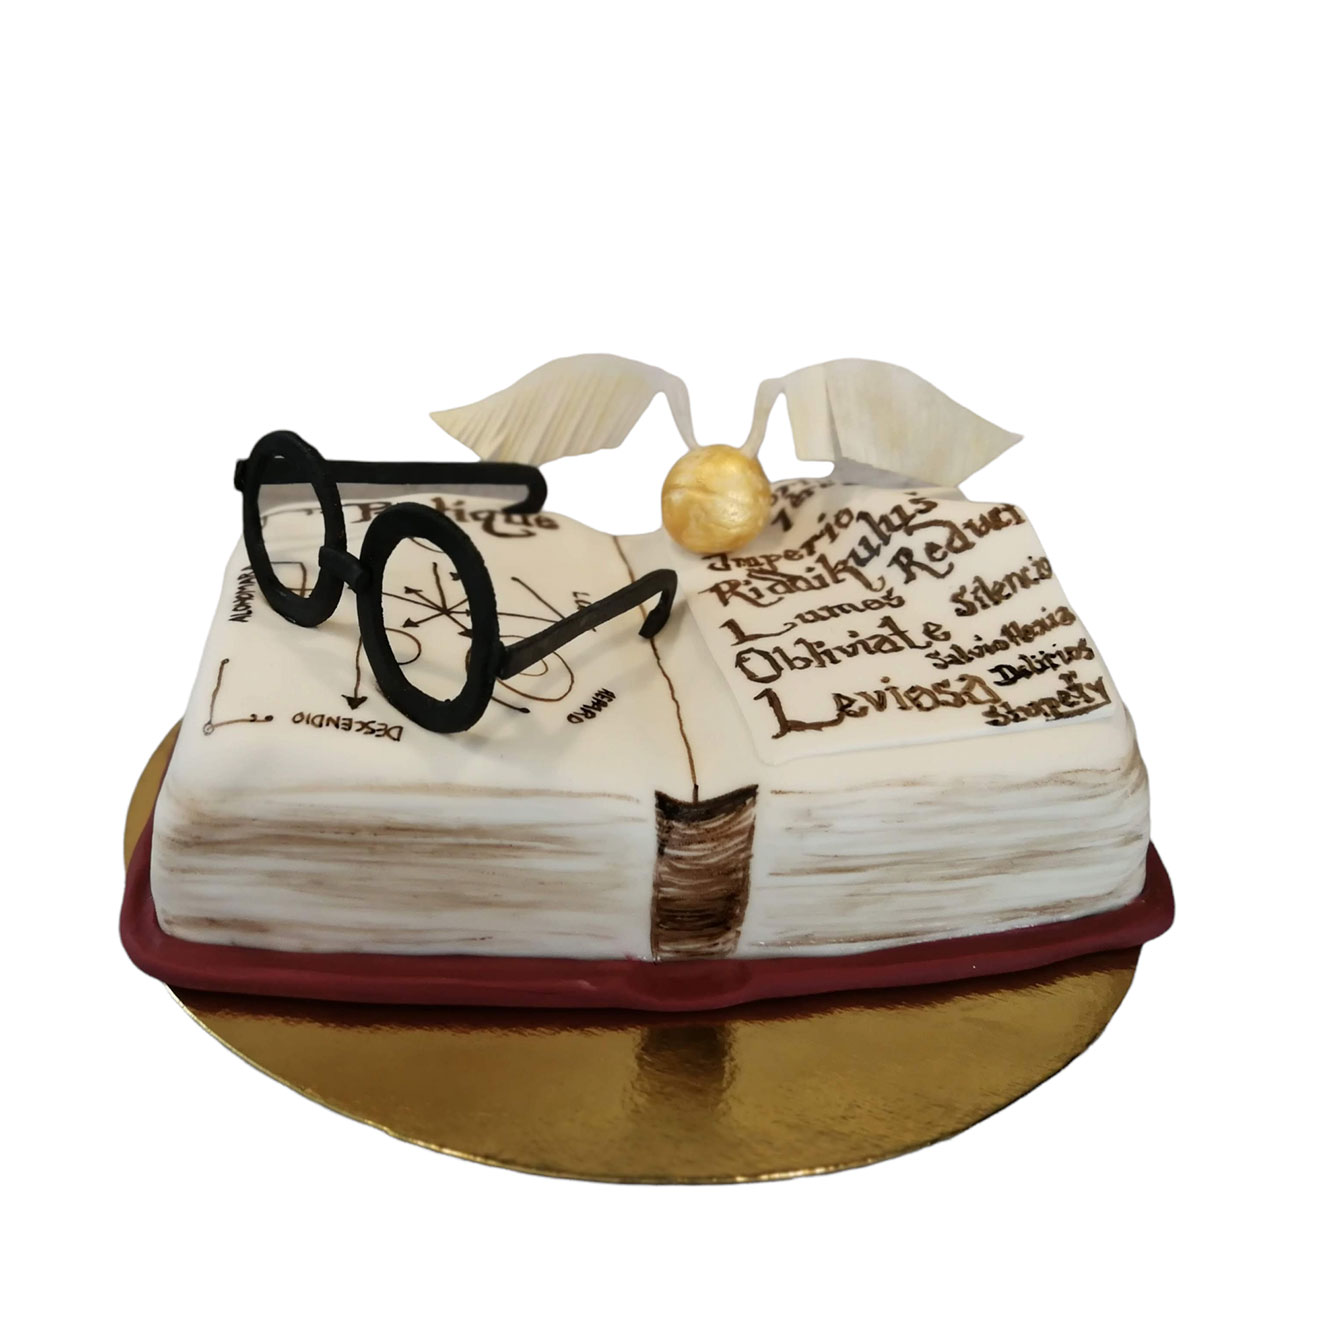 Gâteau Harry Potter super réaliste: Grimoire, vif d'or, choixpeau, baguette  et écharpe Gryffondor, tout y est! - by Anne-Sophie FashionCooking